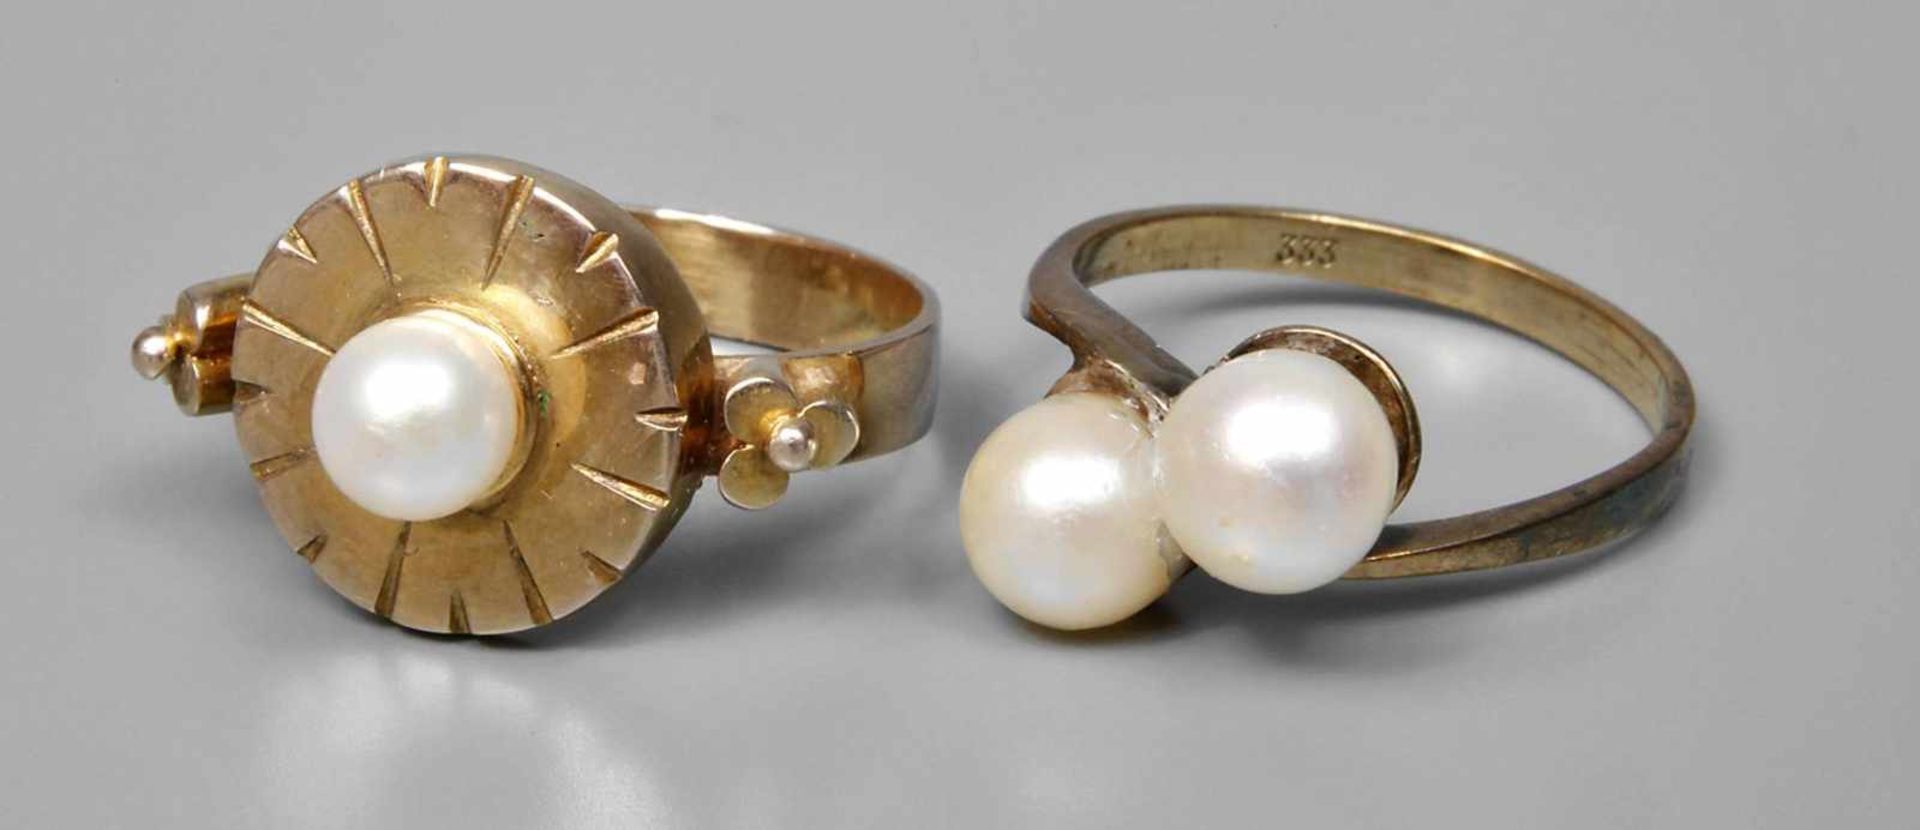 Zwei Damenringe mit Perlen 2. Hälfte 20. Jh., Gelbgold gestempelt 333, jeweils besetzt mit Perlen,